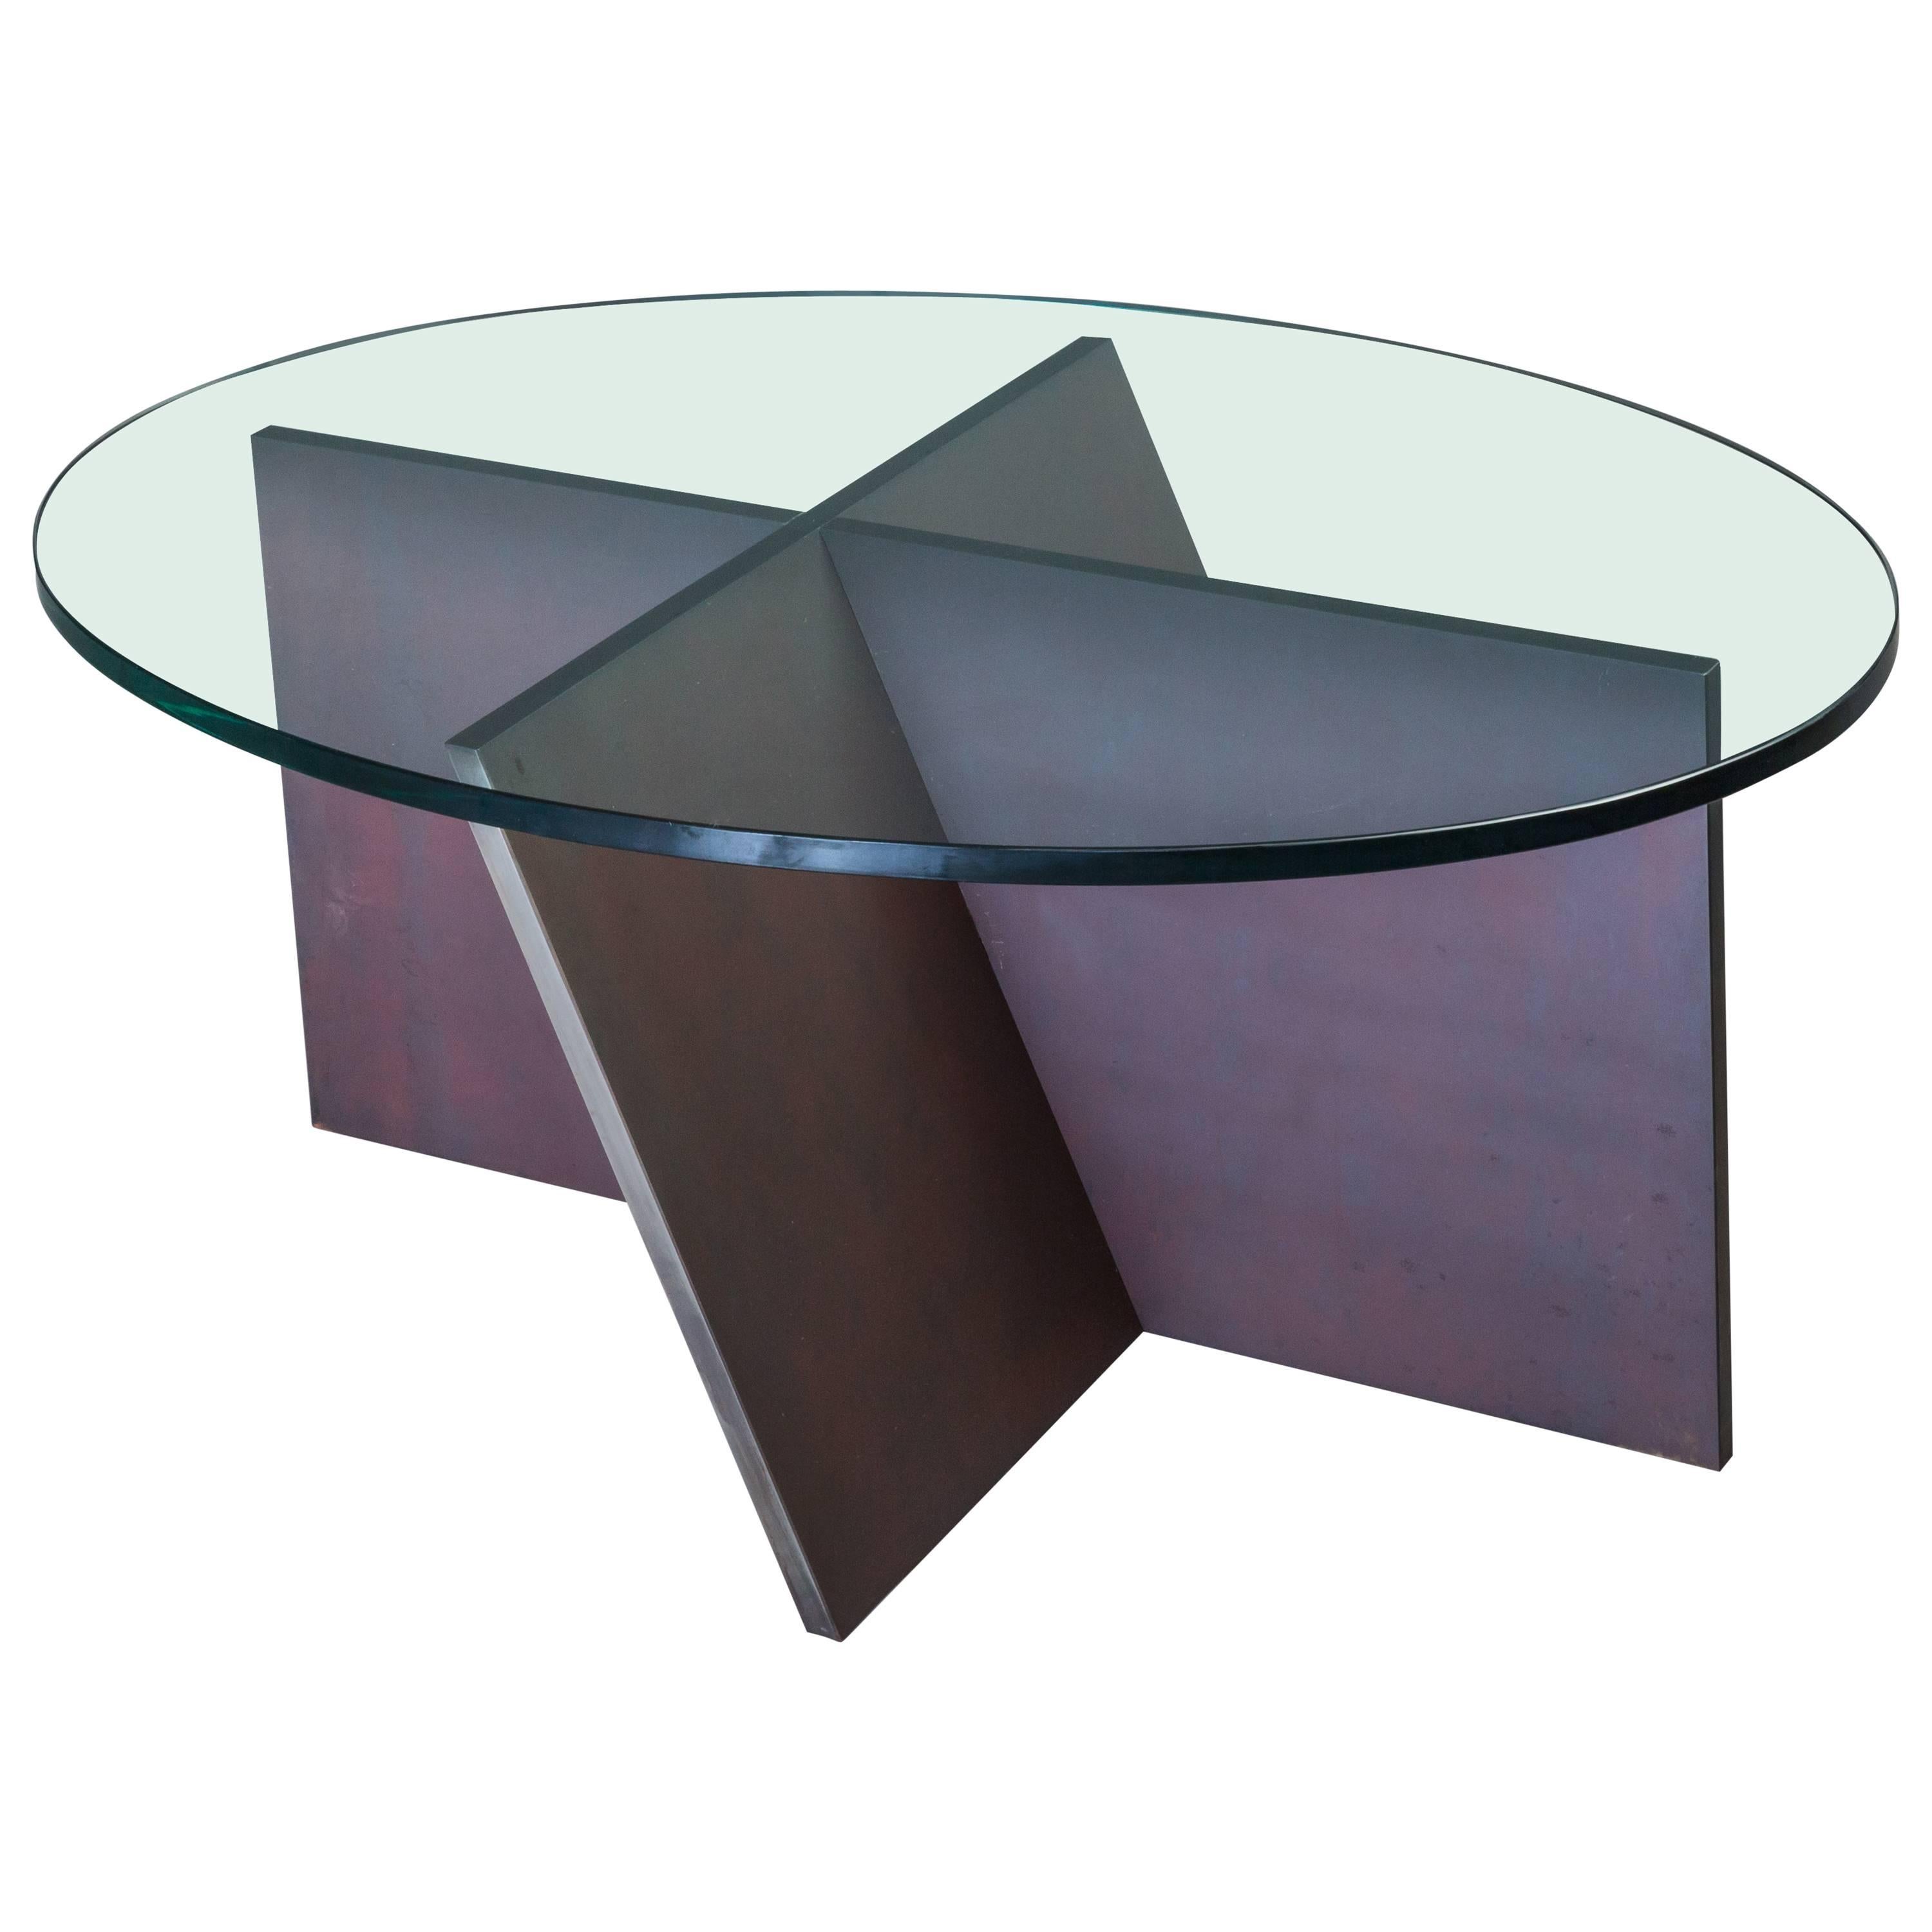 Ovaler minimalistischer skulpturaler Couchtisch aus Stahl und Glas, Unikat 